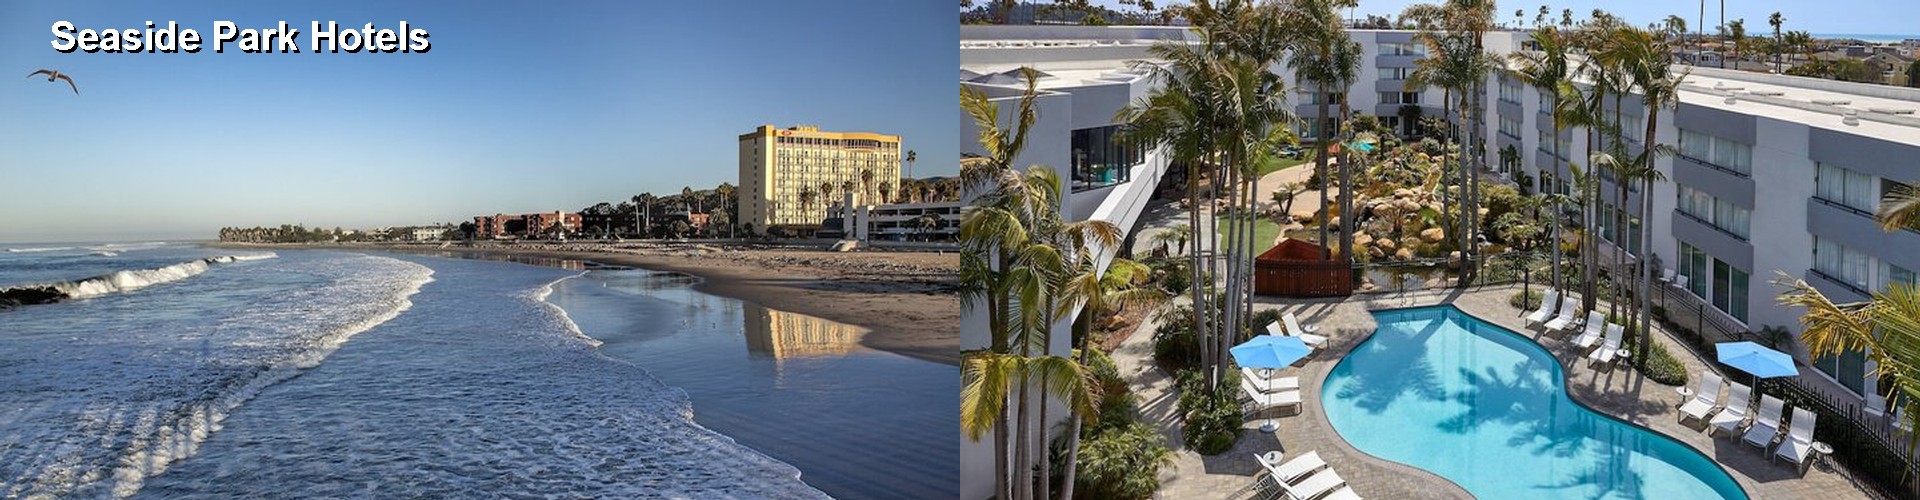 5 Best Hotels near Seaside Park